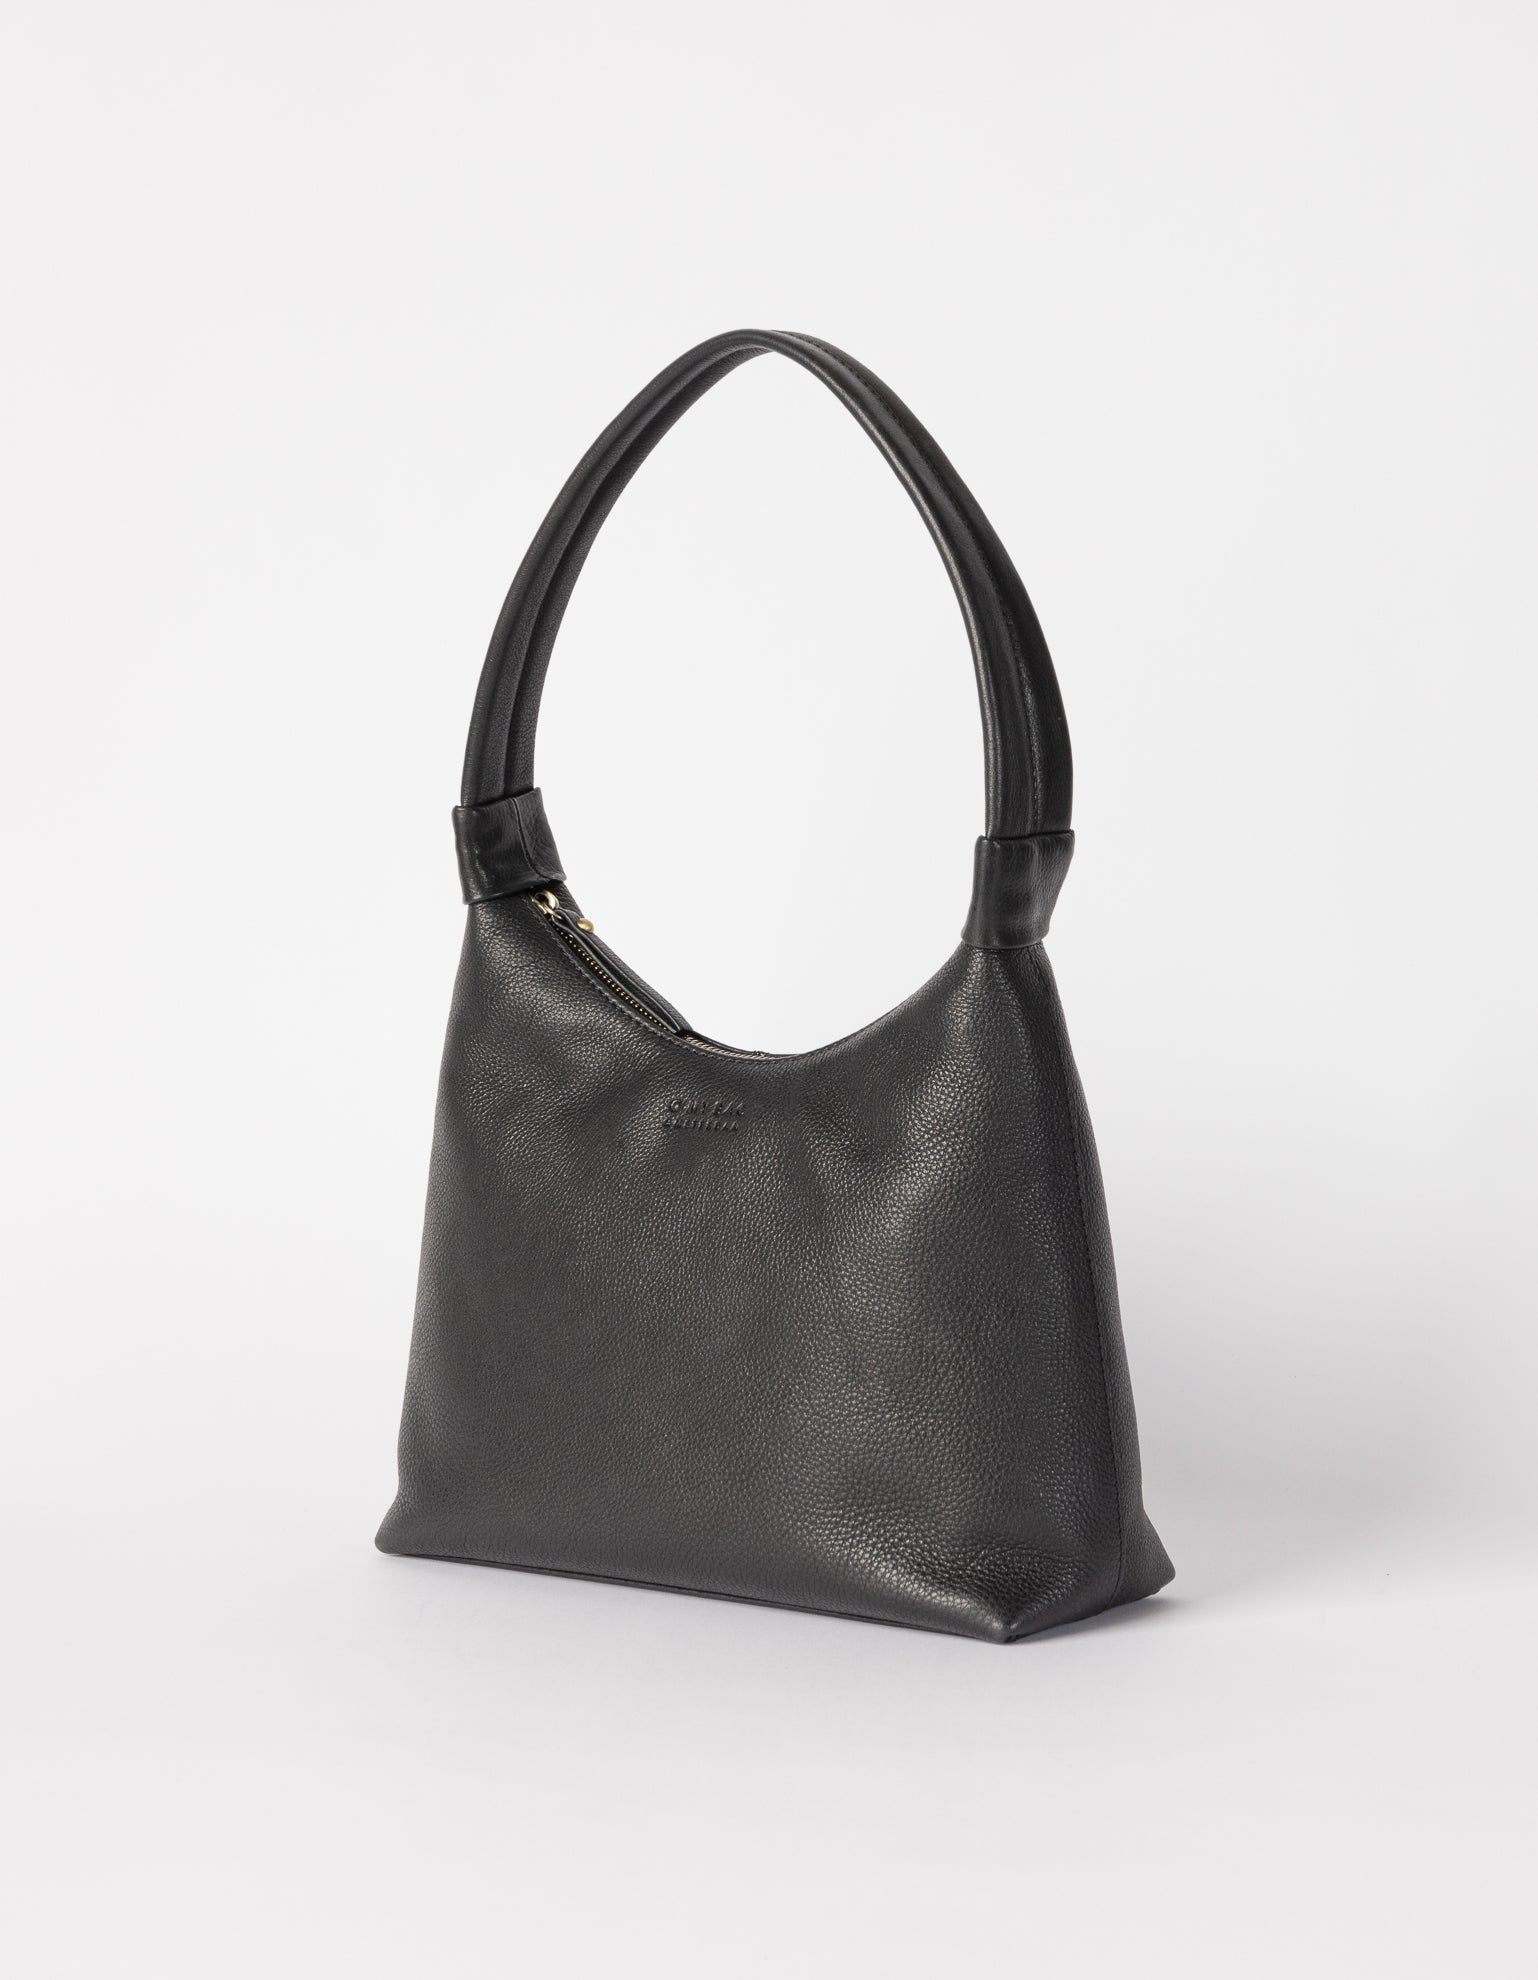 Nora shoulder bag, side product image